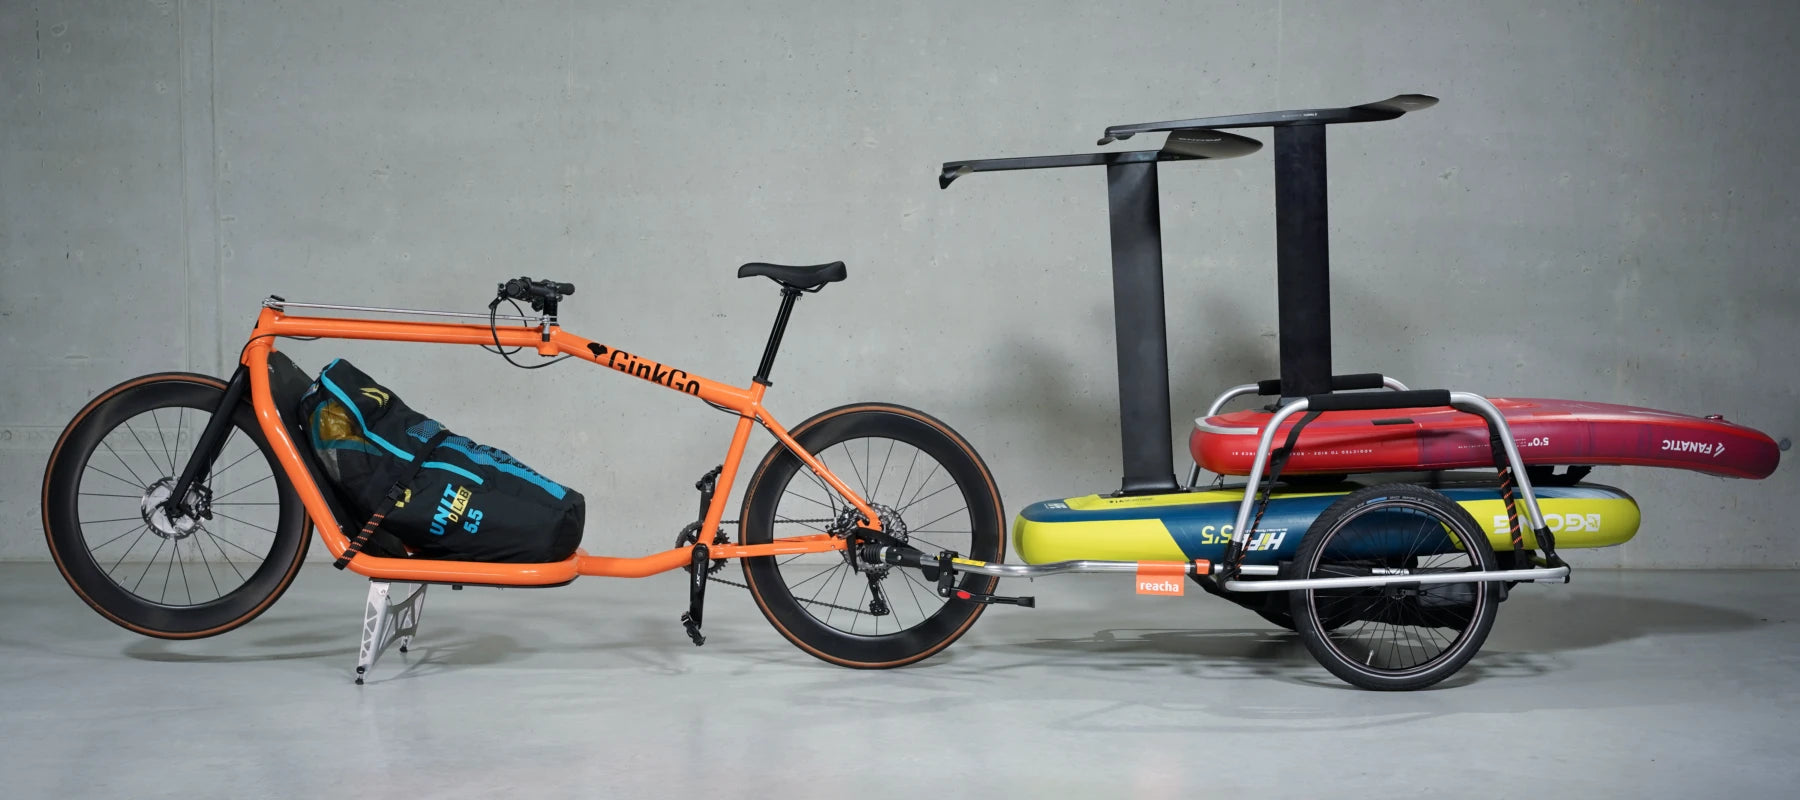 Bicicleta de carga GinkGo con remolque de carga de reacha